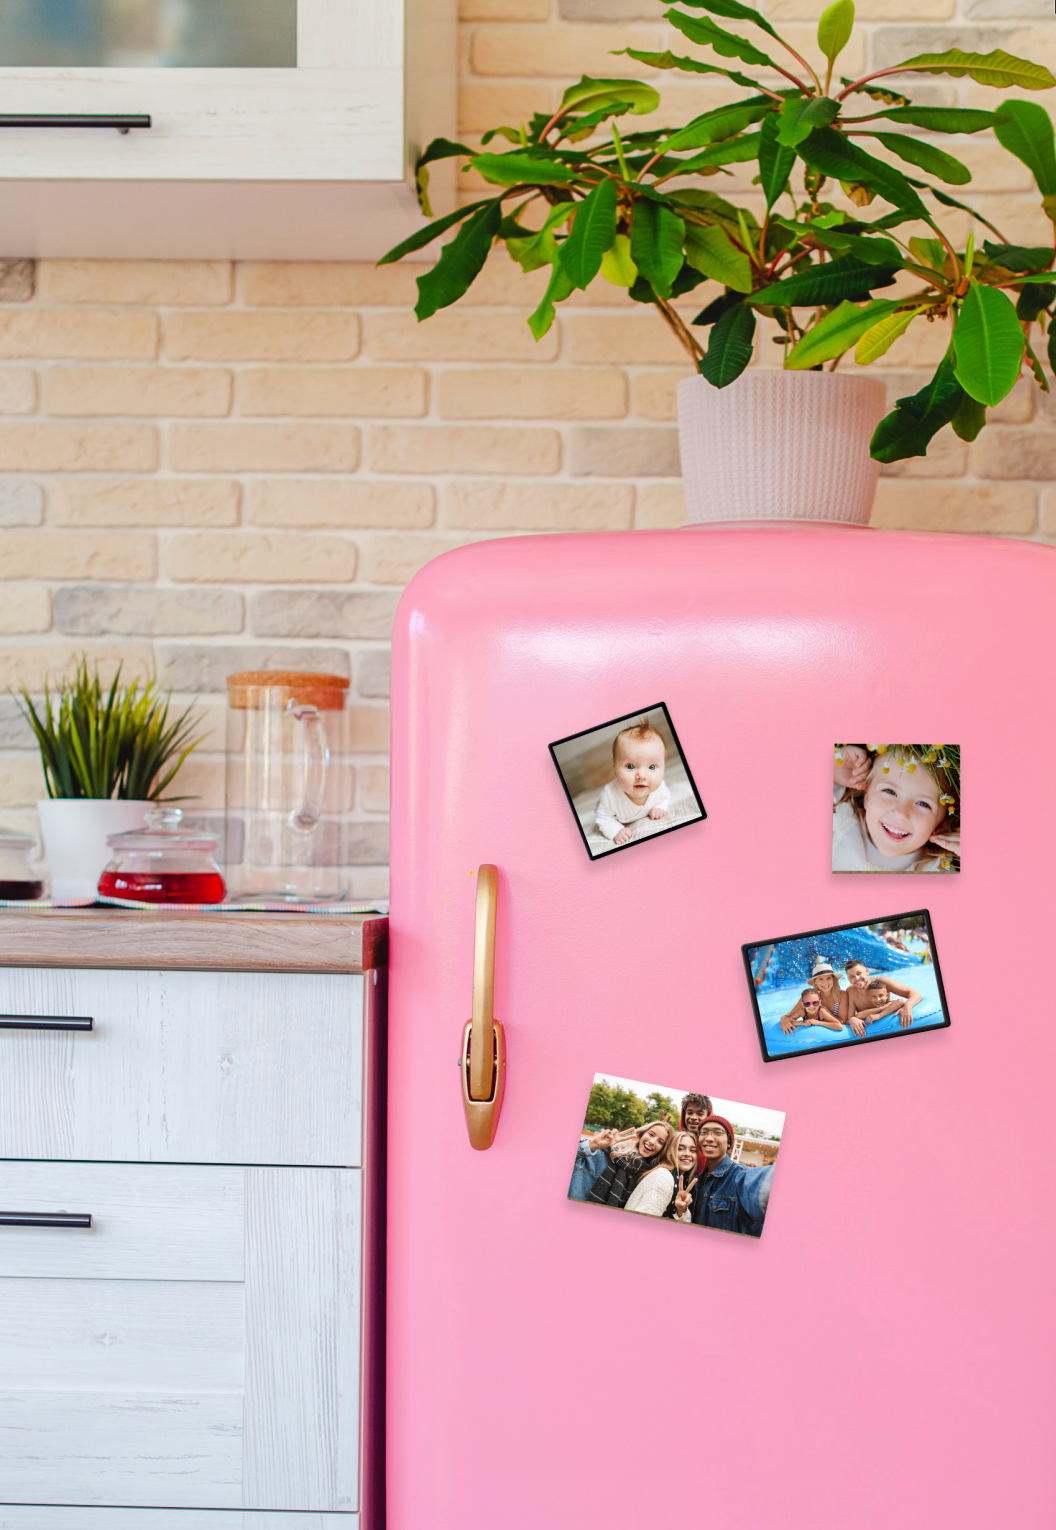 photos magnetiques exposées sur un frigo rose